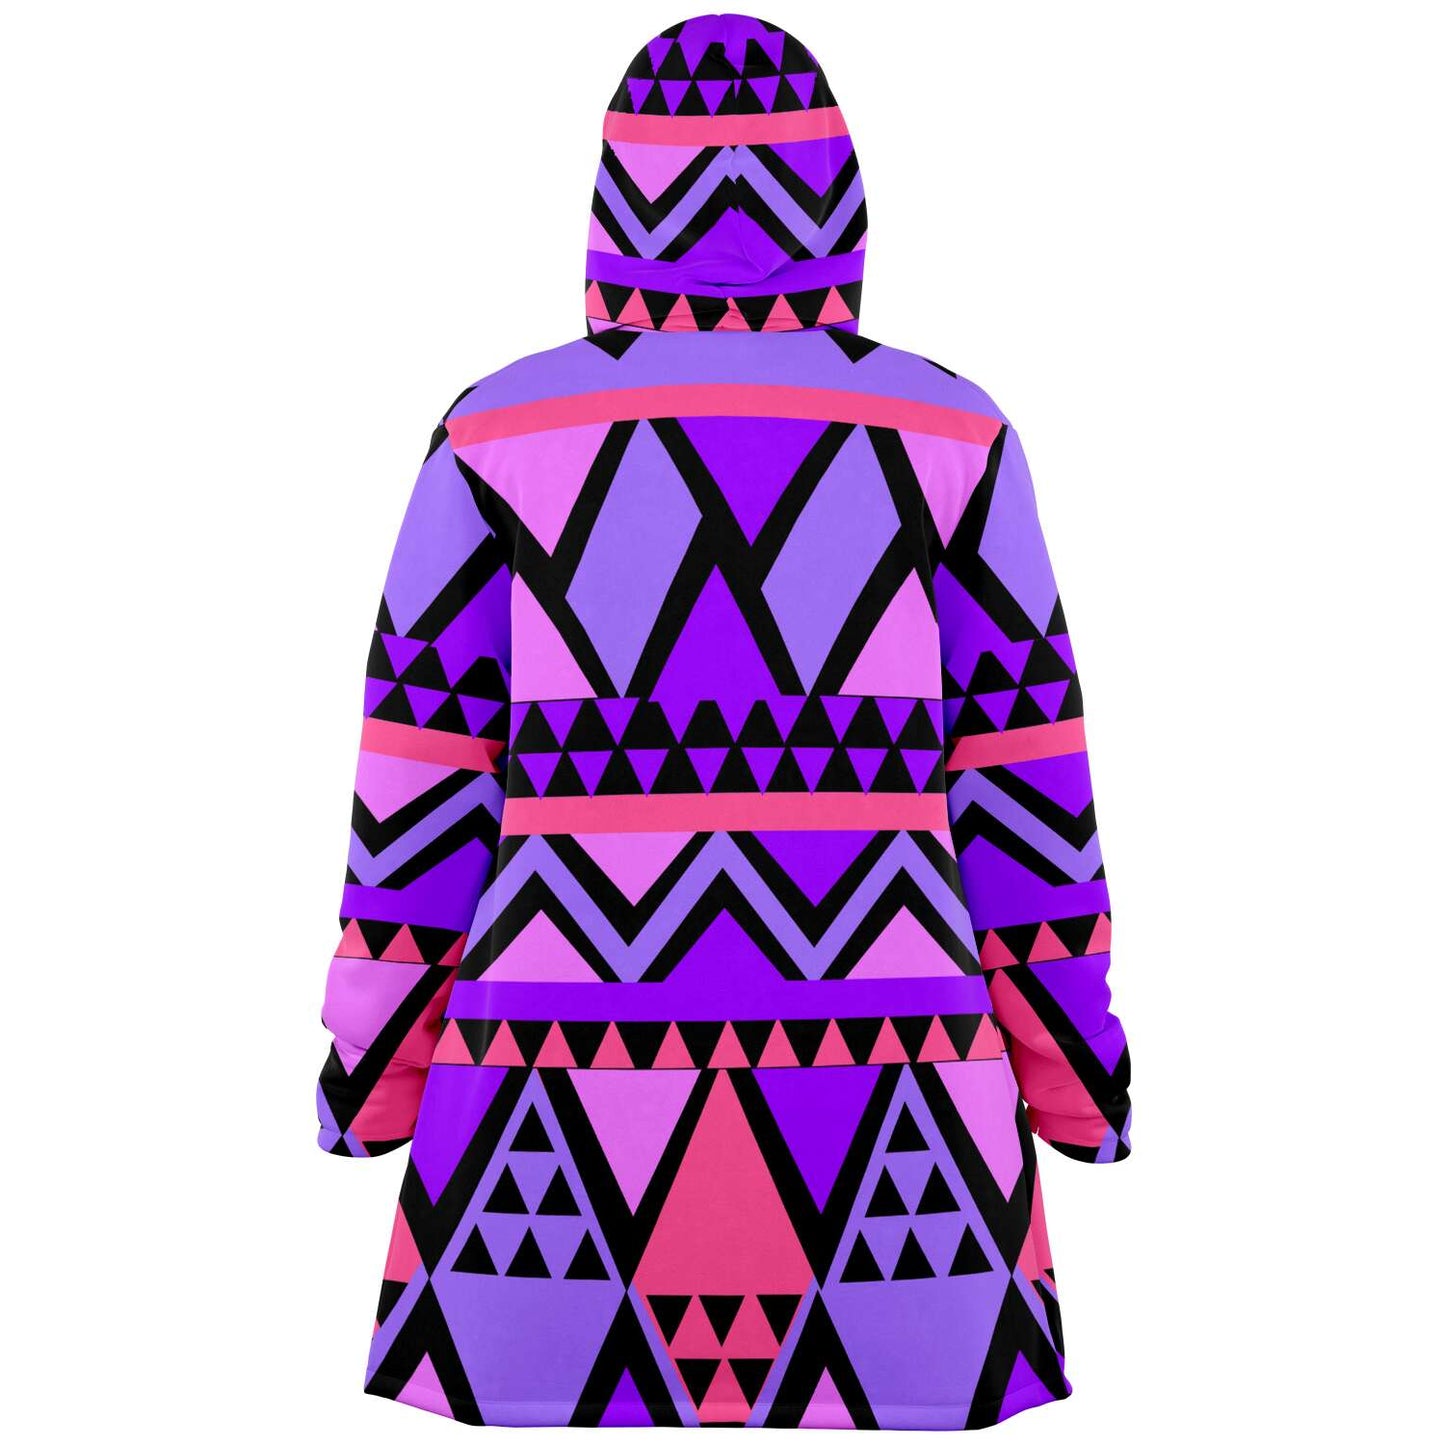 Maori Seamless Purple Microfleece Cloak DromedarShop.com Online Boutique